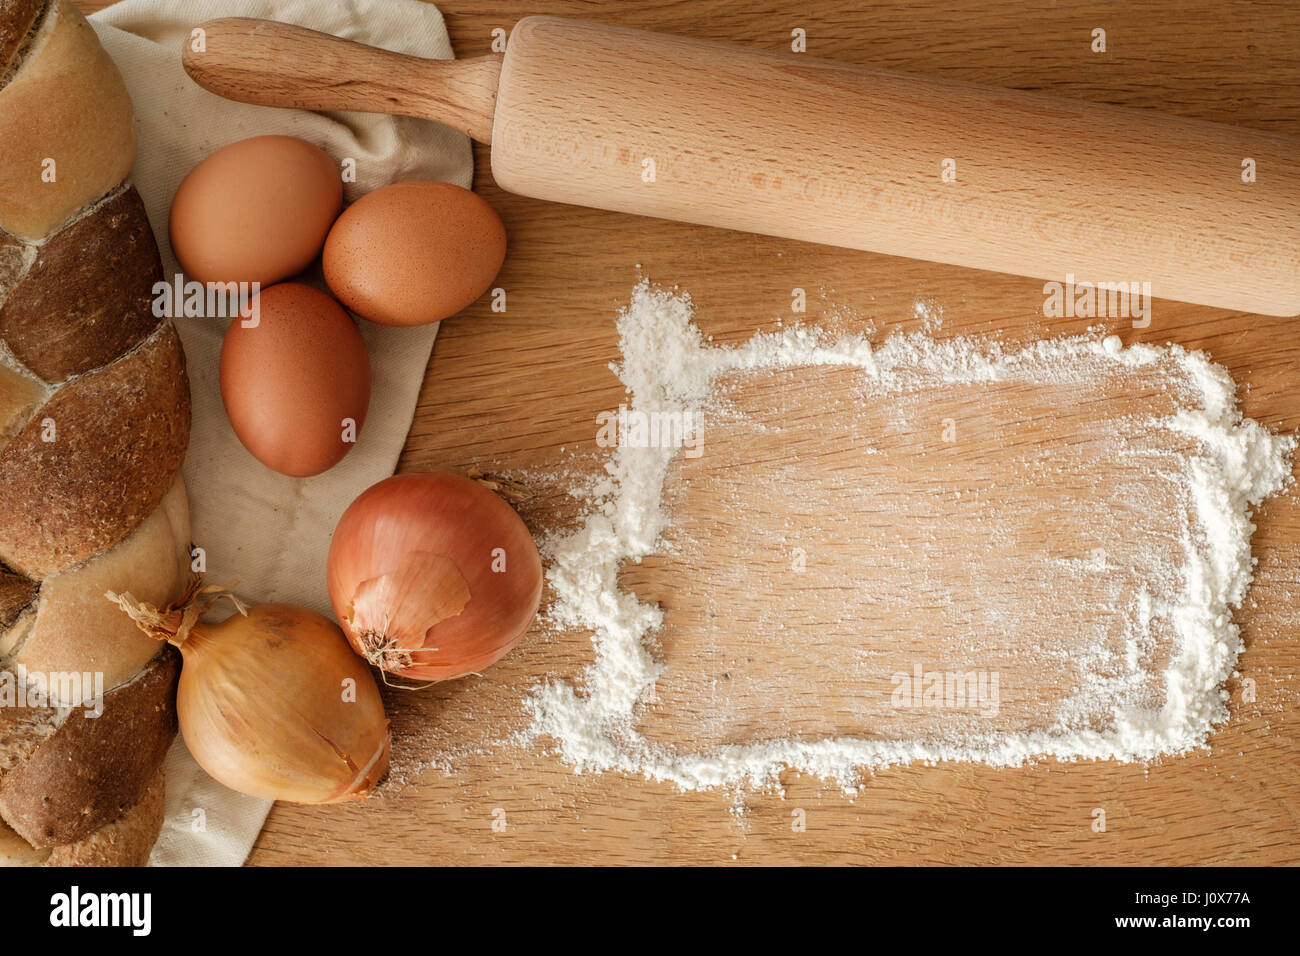 Brot mit Zwiebeln, Eiern, Mehl und einem Nudelholz auf einem Holztisch mit textfreiraum geflochten.  Food-Konzept Stockfoto